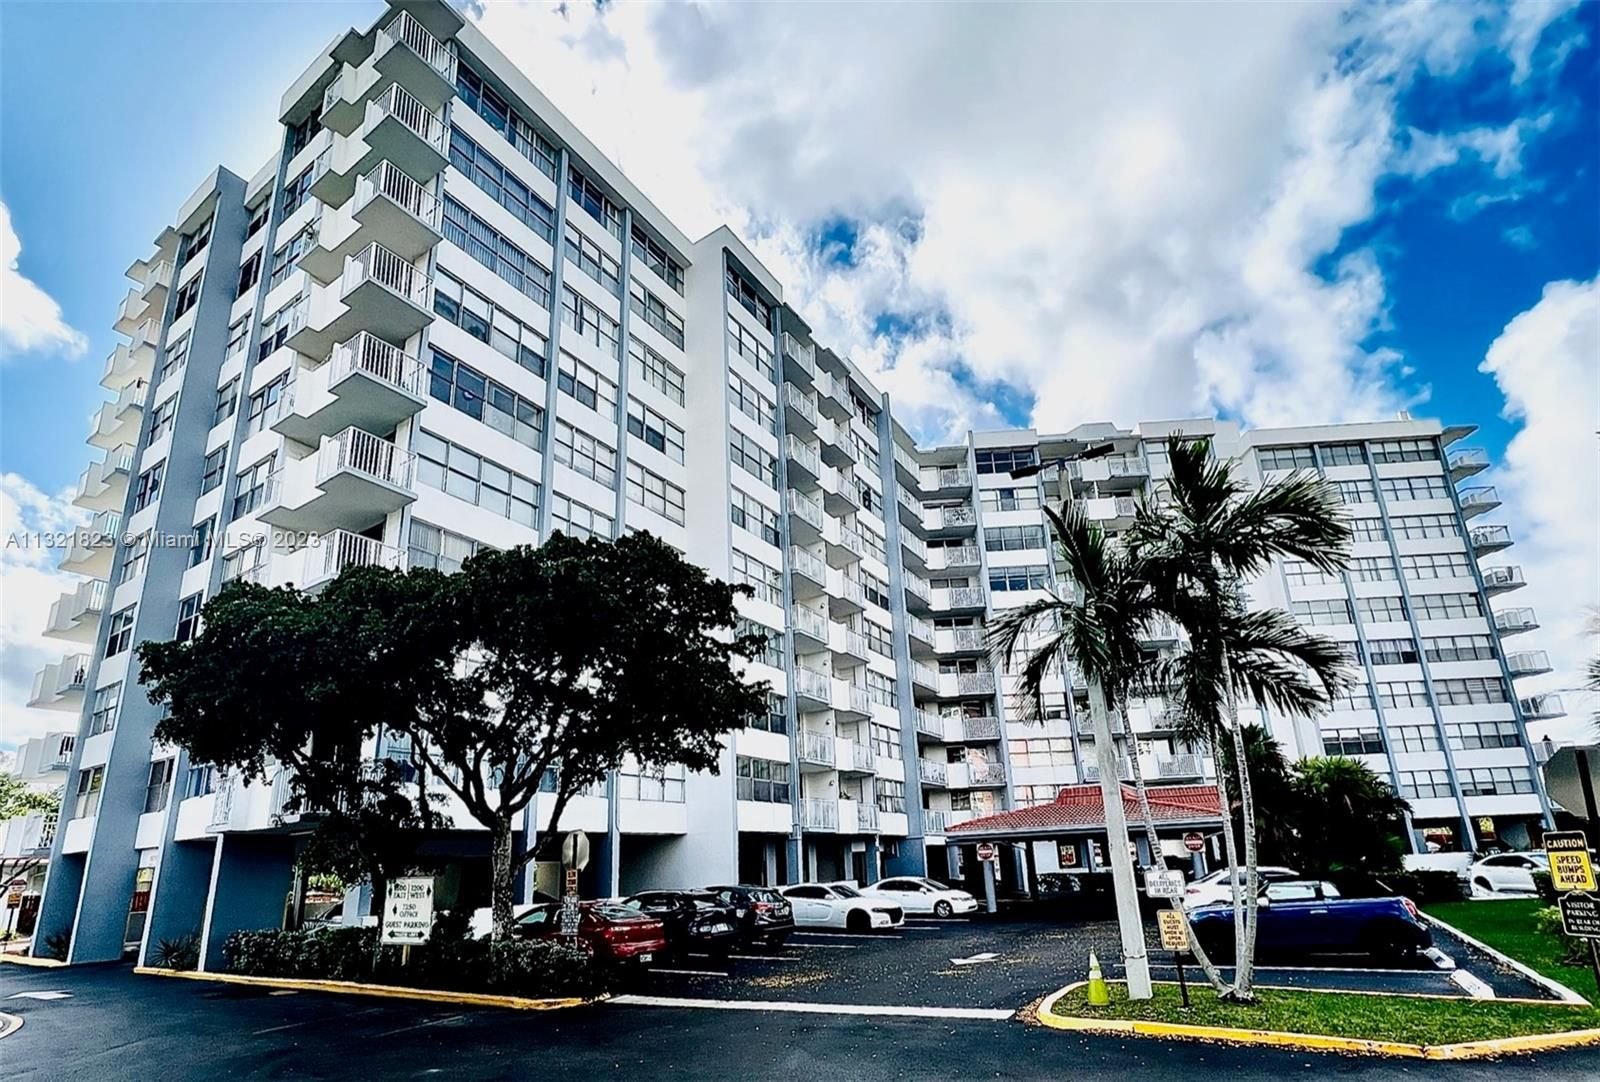 Real estate property located at 1200 Miami Gardens Dr #408W, Miami-Dade County, Miami, FL